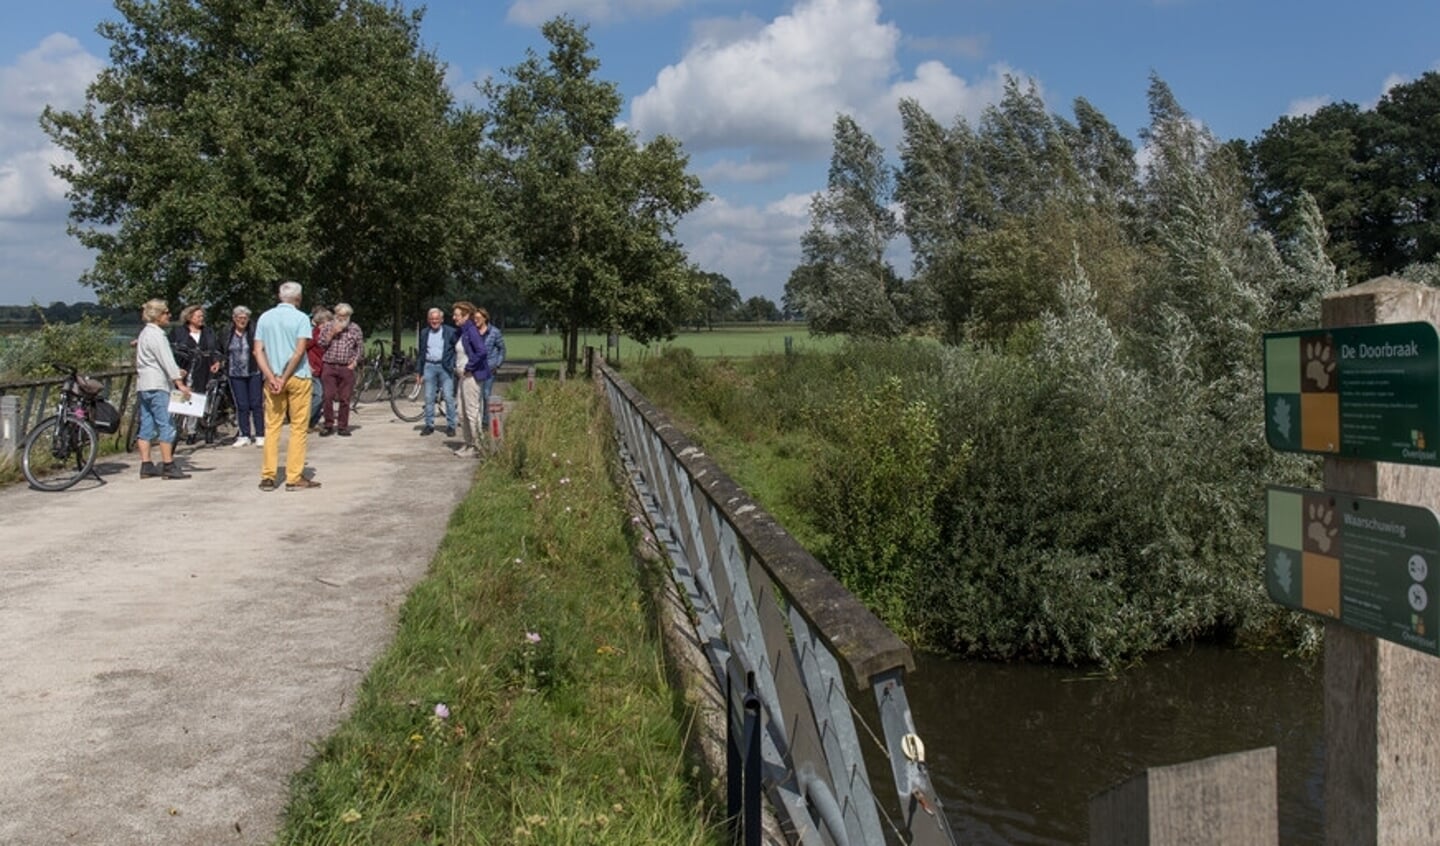 Landschap Overijssel houdt een fietsexcursie door De Doorbraak.